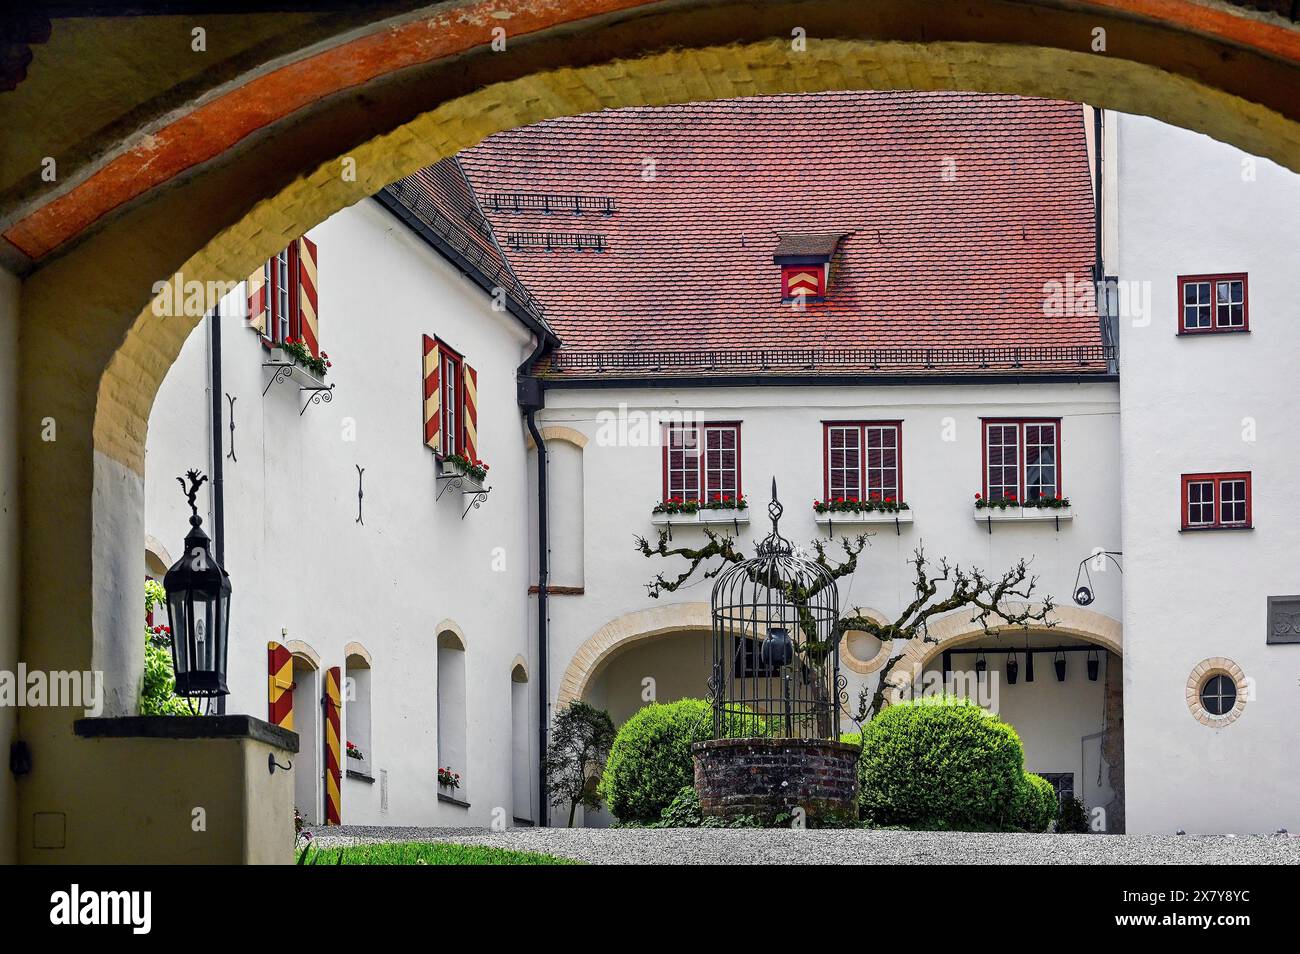 Il castello di Kronburg è un edificio storico. Costruito intorno all'anno 1200, Allgäu, Svevia, Baviera, Germania, Europa Foto Stock